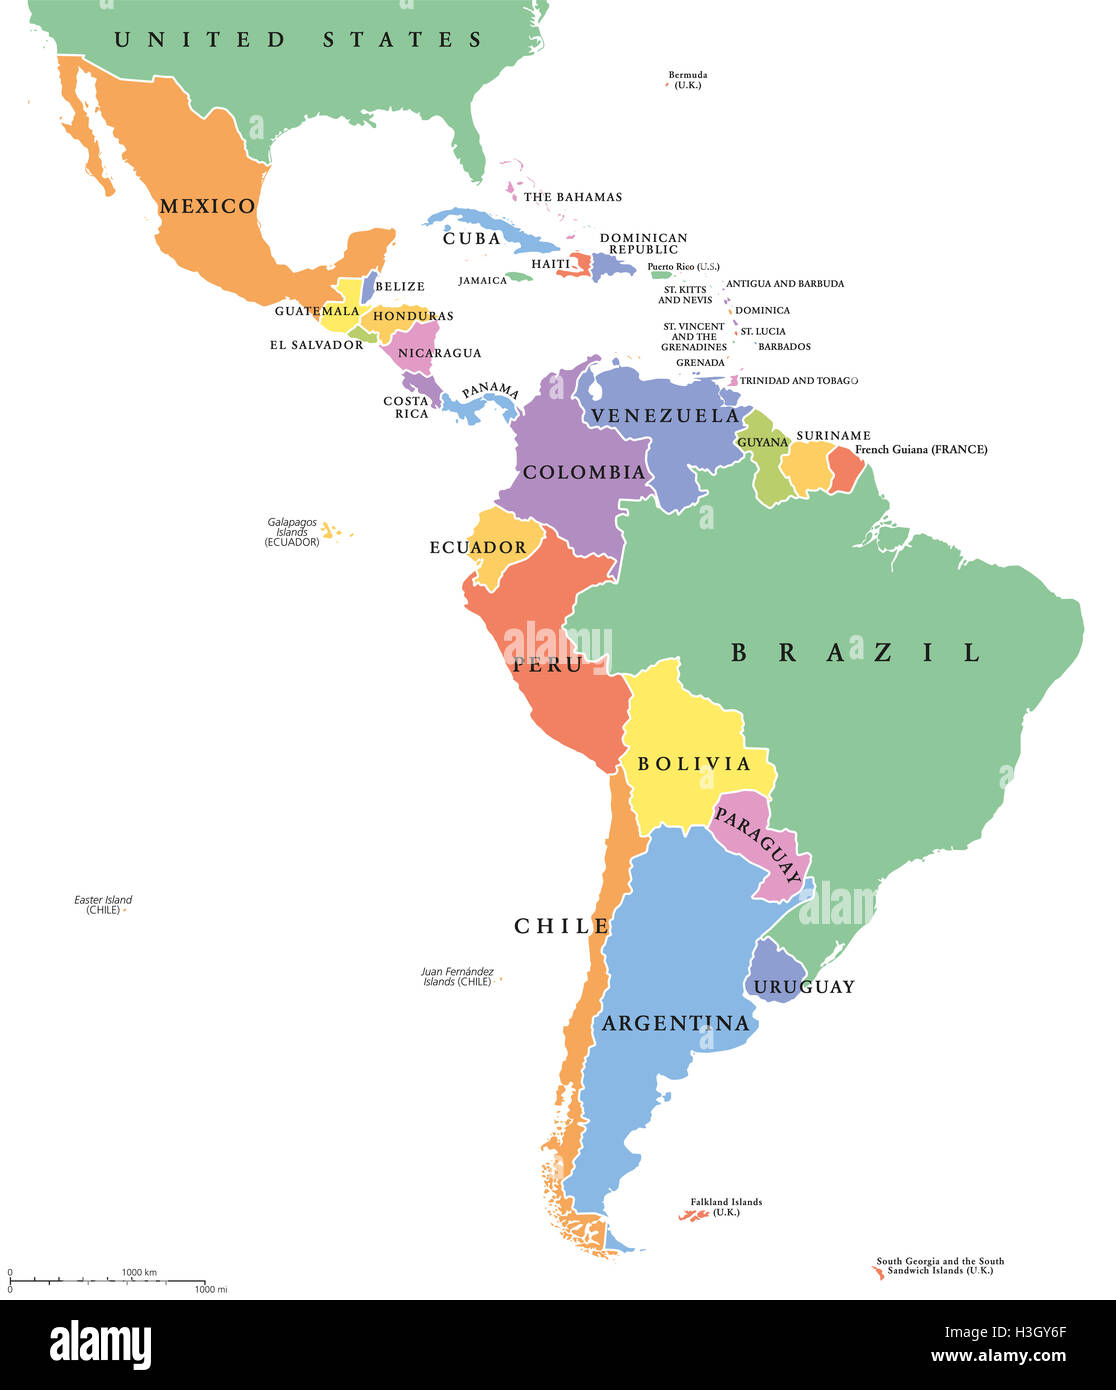 América Latina solo miembros mapa político. Los países en diferentes colores, con fronteras nacionales e Inglés nombres de países. Foto de stock